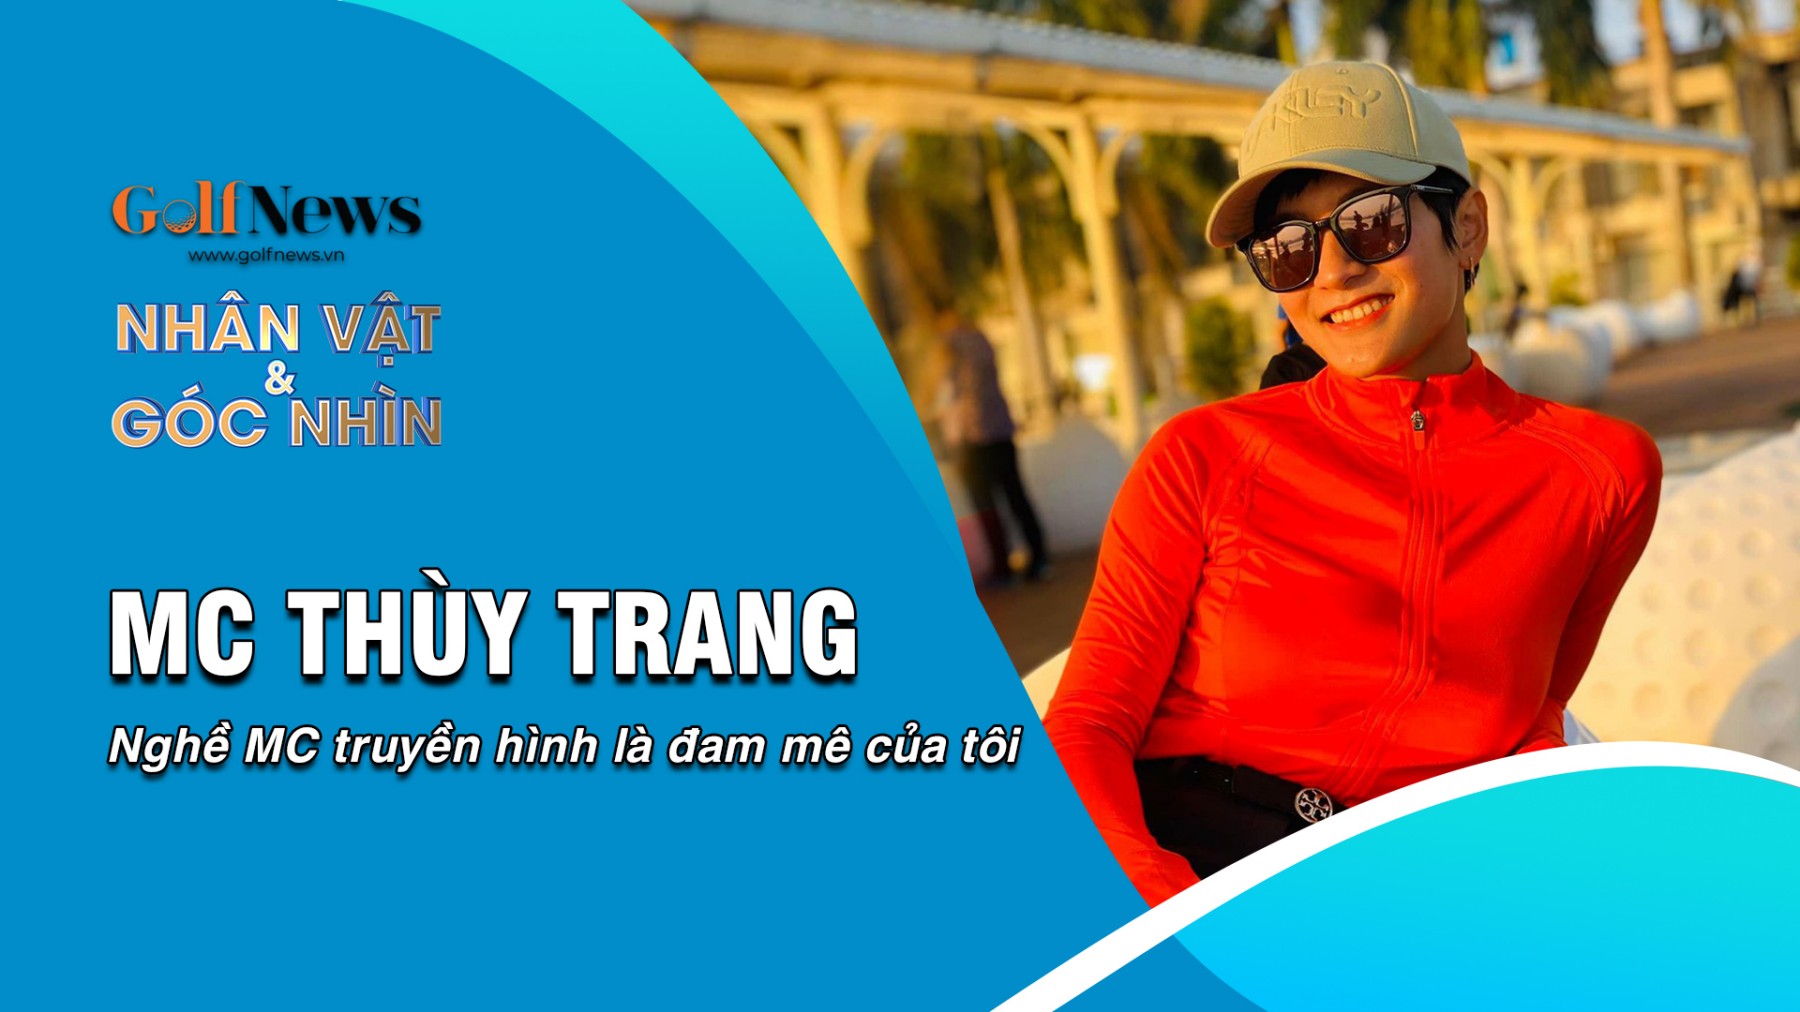 MC Thùy Trang: Nghề MC truyền hình là đam mê của tôi